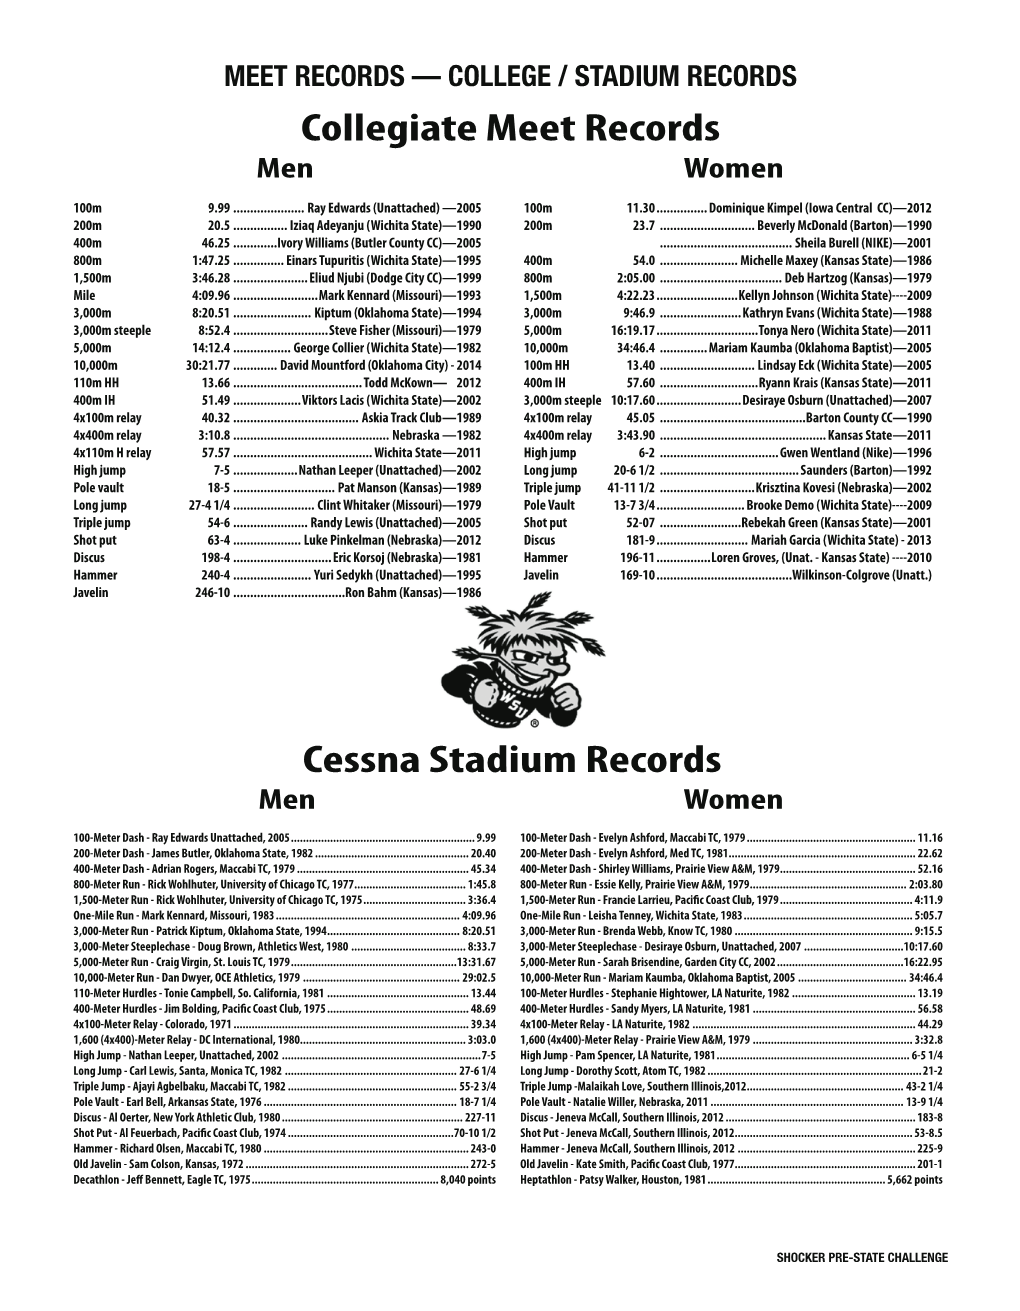 Collegiate Meet Records Cessna Stadium Records